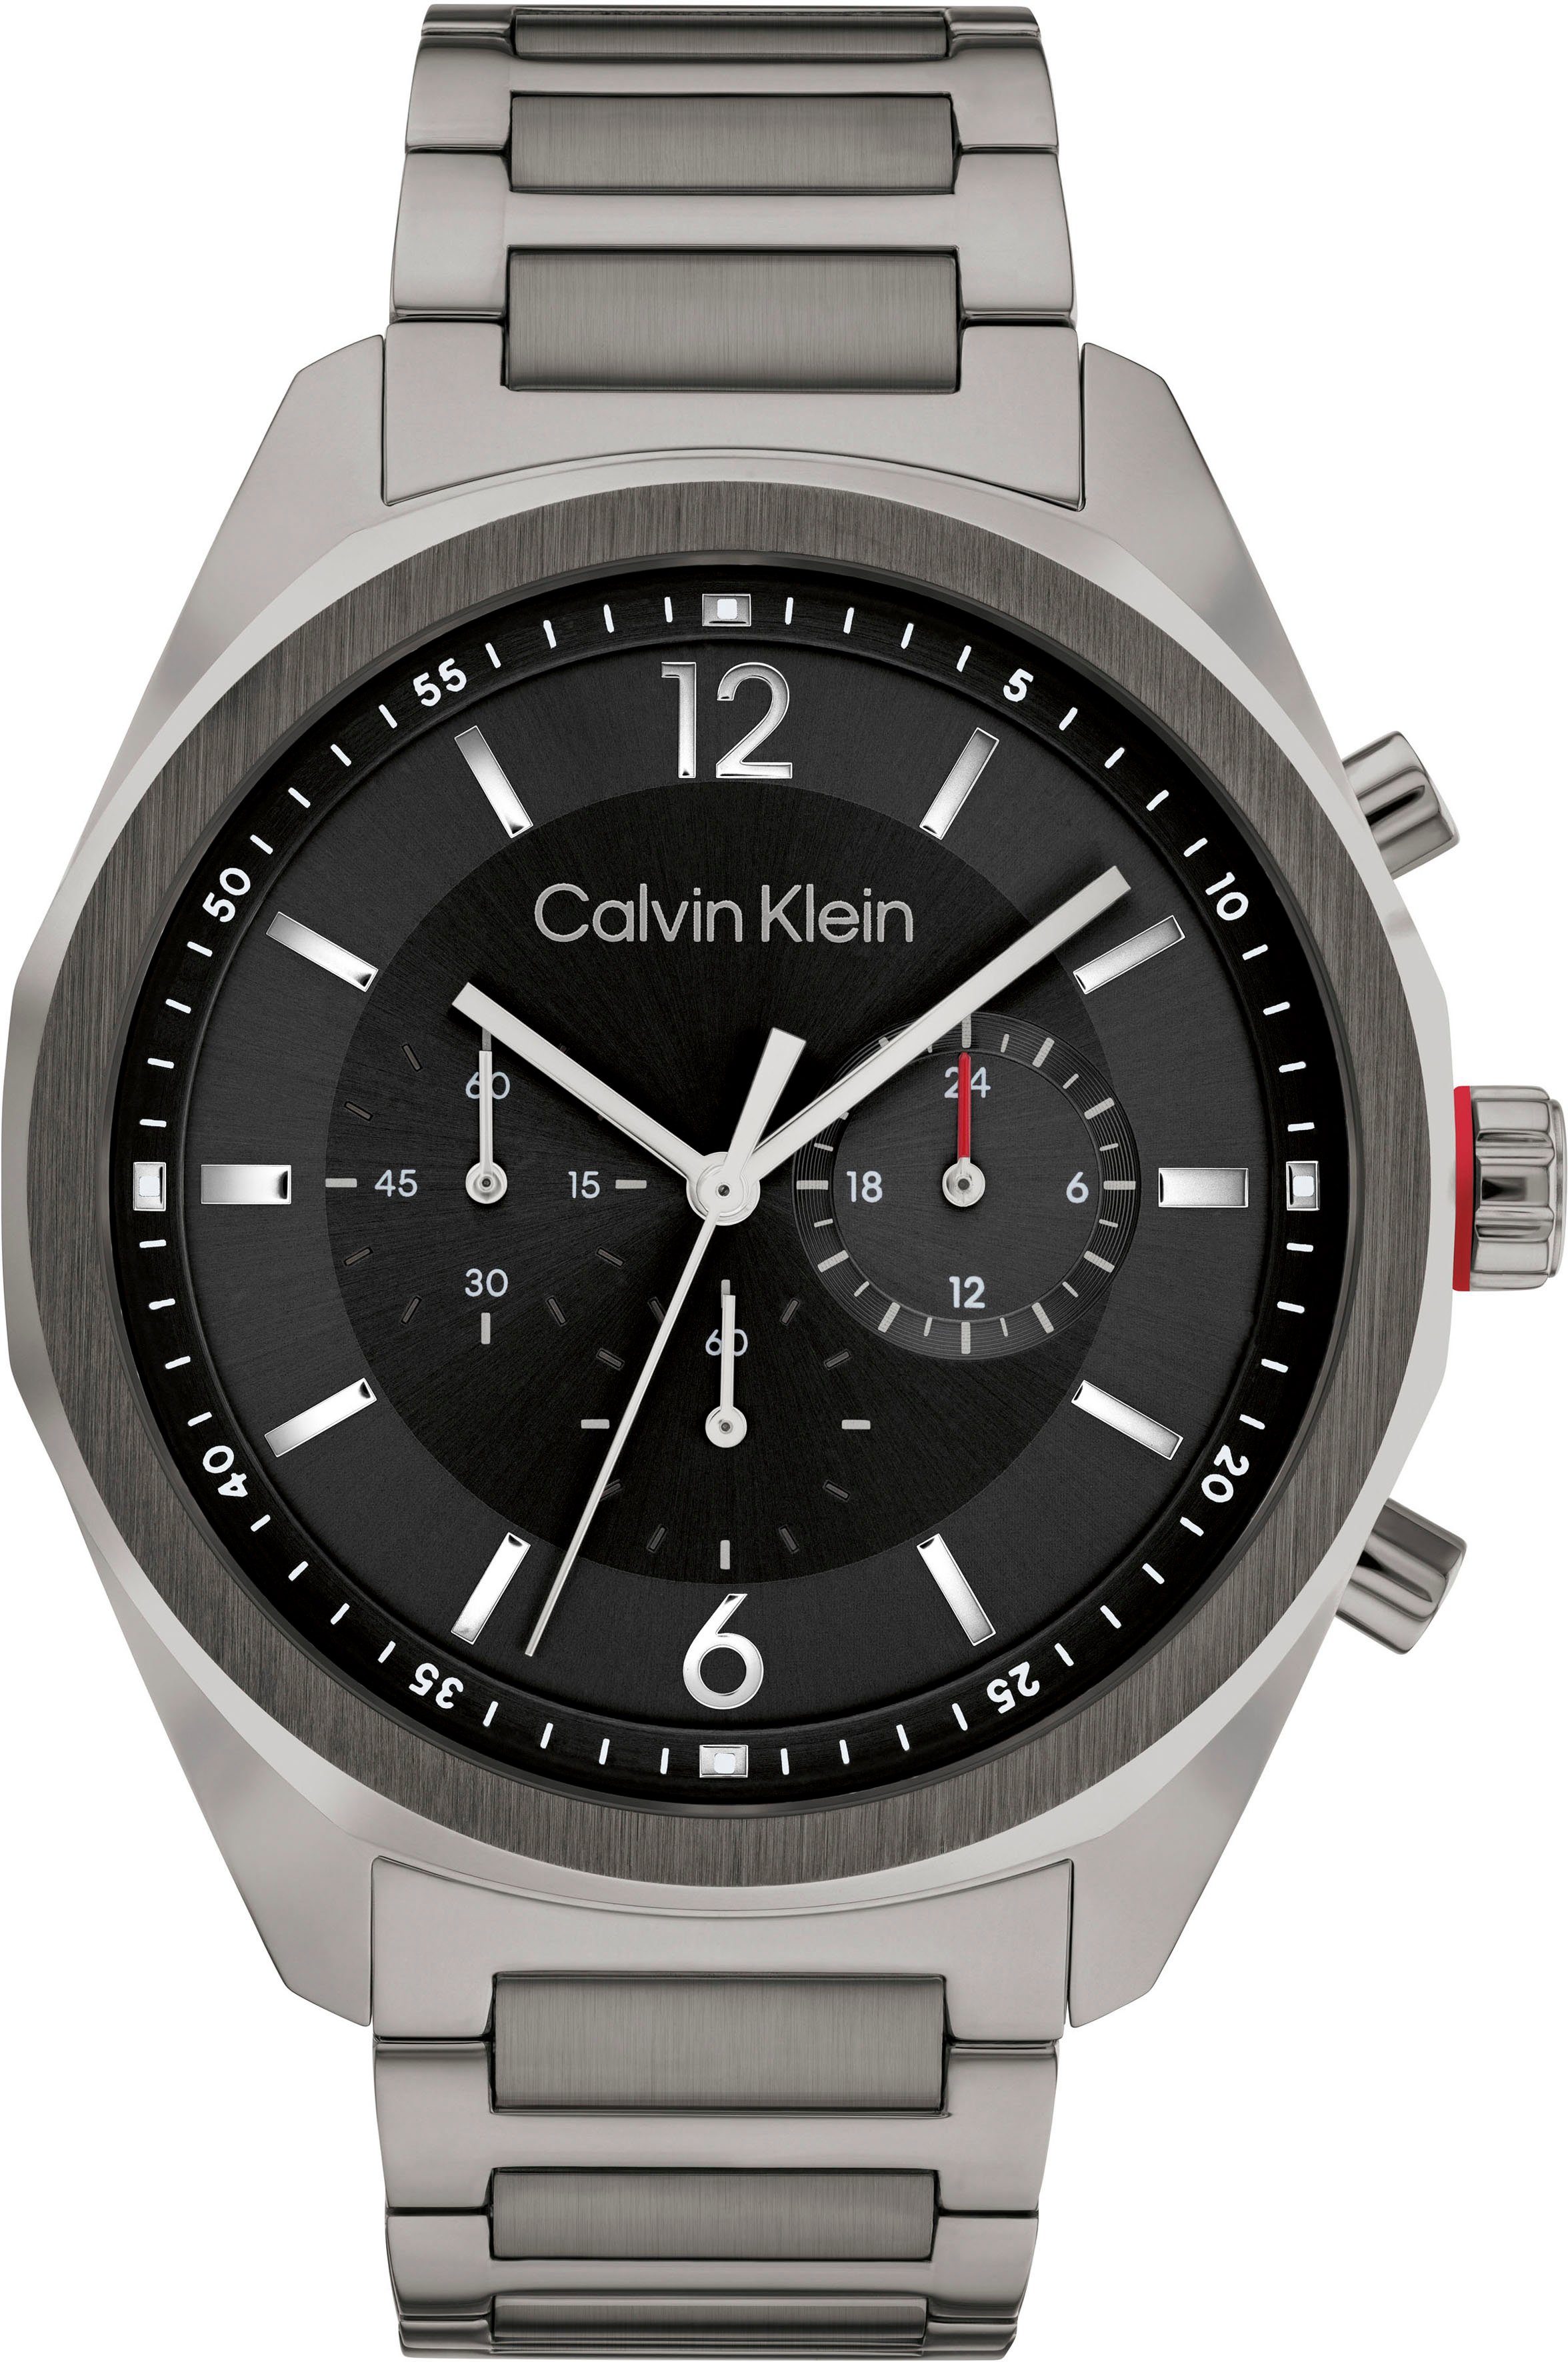 Calvin Klein Chronograaf ARCHITECTURAL, | online nu bestellen 25200267 OTTO